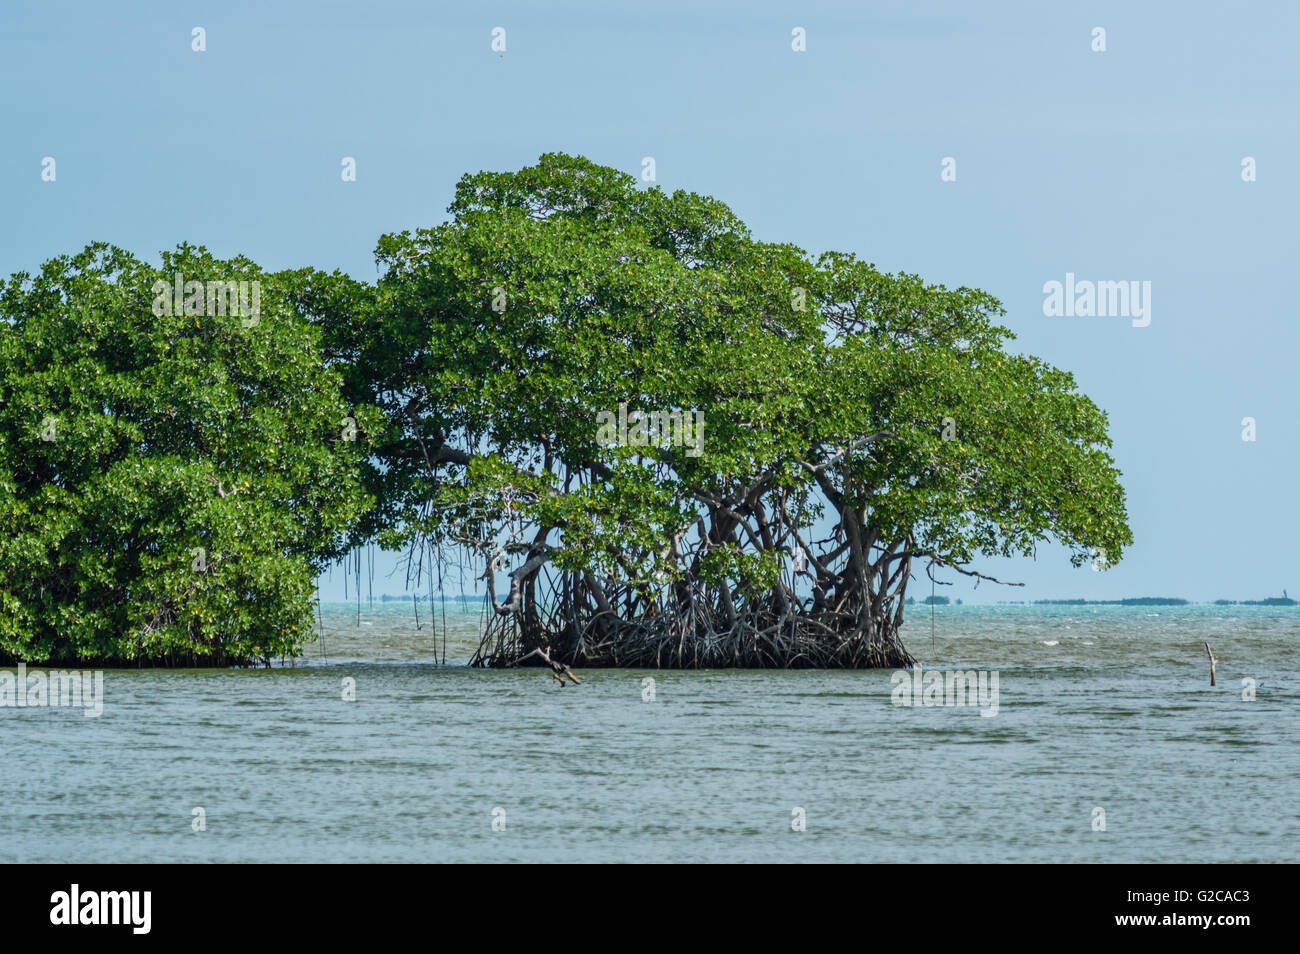 Marais de mangroves le long de la côte du Belize. Belize City, Belize Banque D'Images